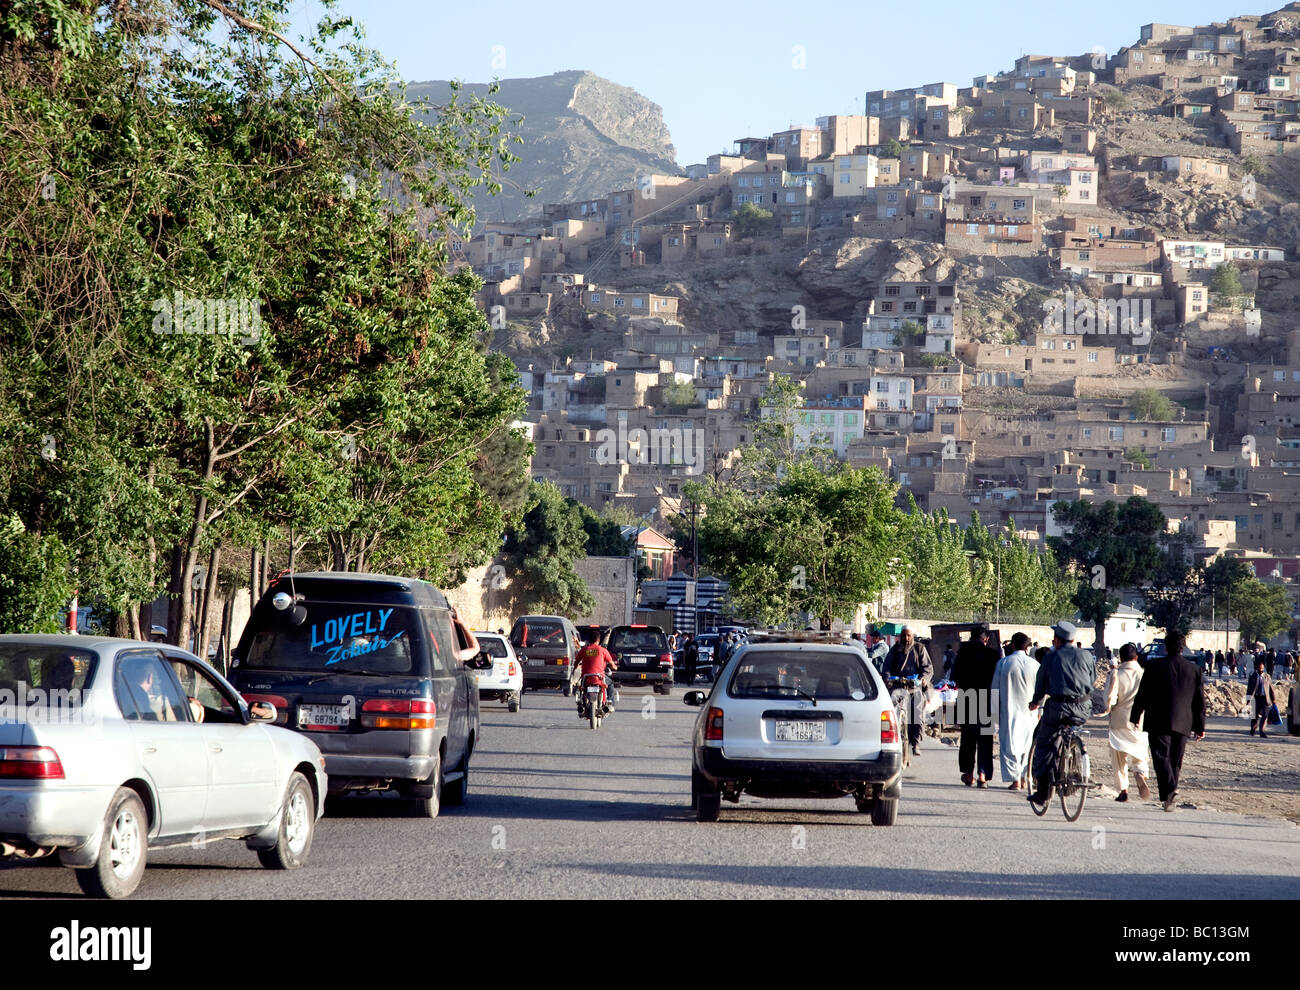 Il traffico voce al di fuori del centro di Kabul verso un popoloso hillside; popolazione della città ha enormemente ampliato negli ultimi anni Foto Stock